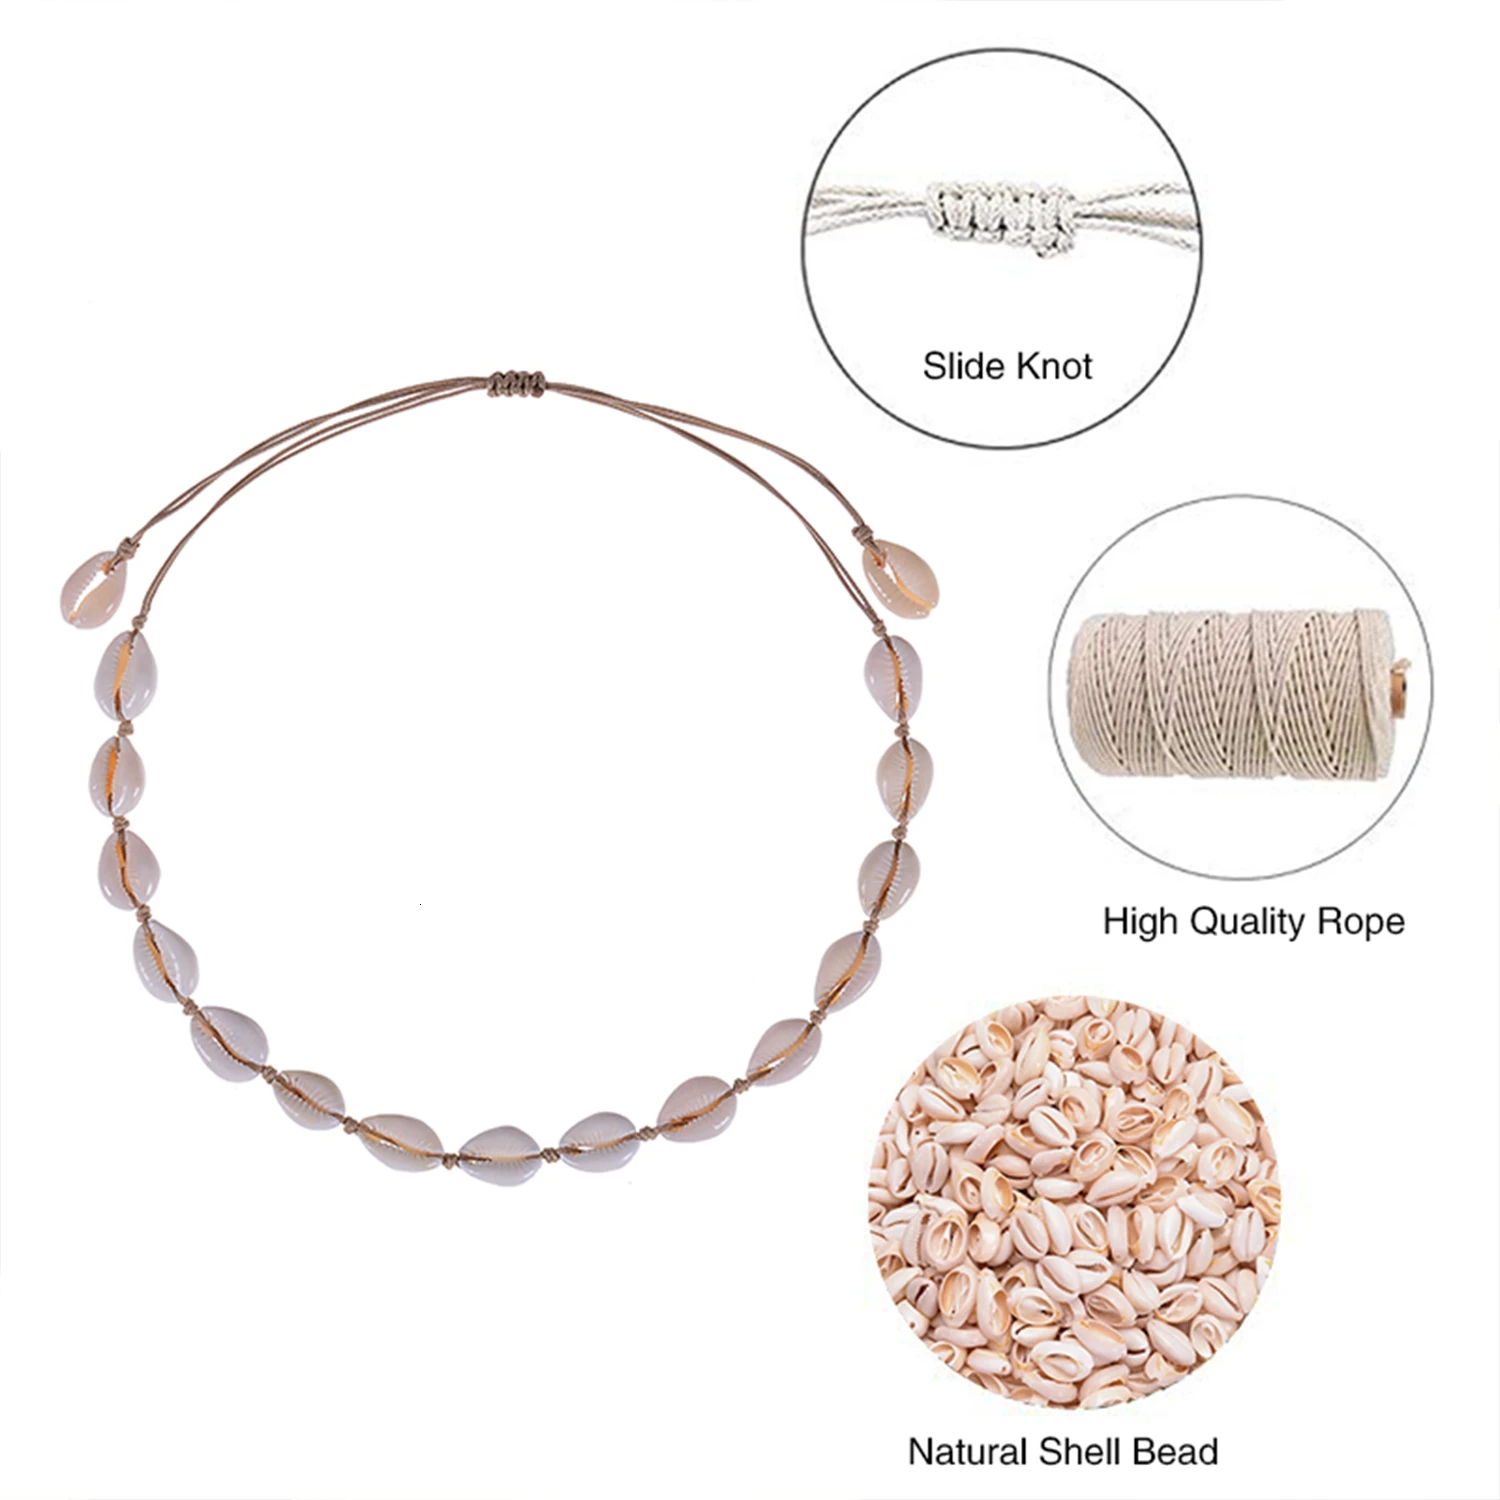 Vnox очаровательные ожерелья в виде ракушки браслеты Набор для женщин праздник Пляж ювелирные изделия Регулируемая длина